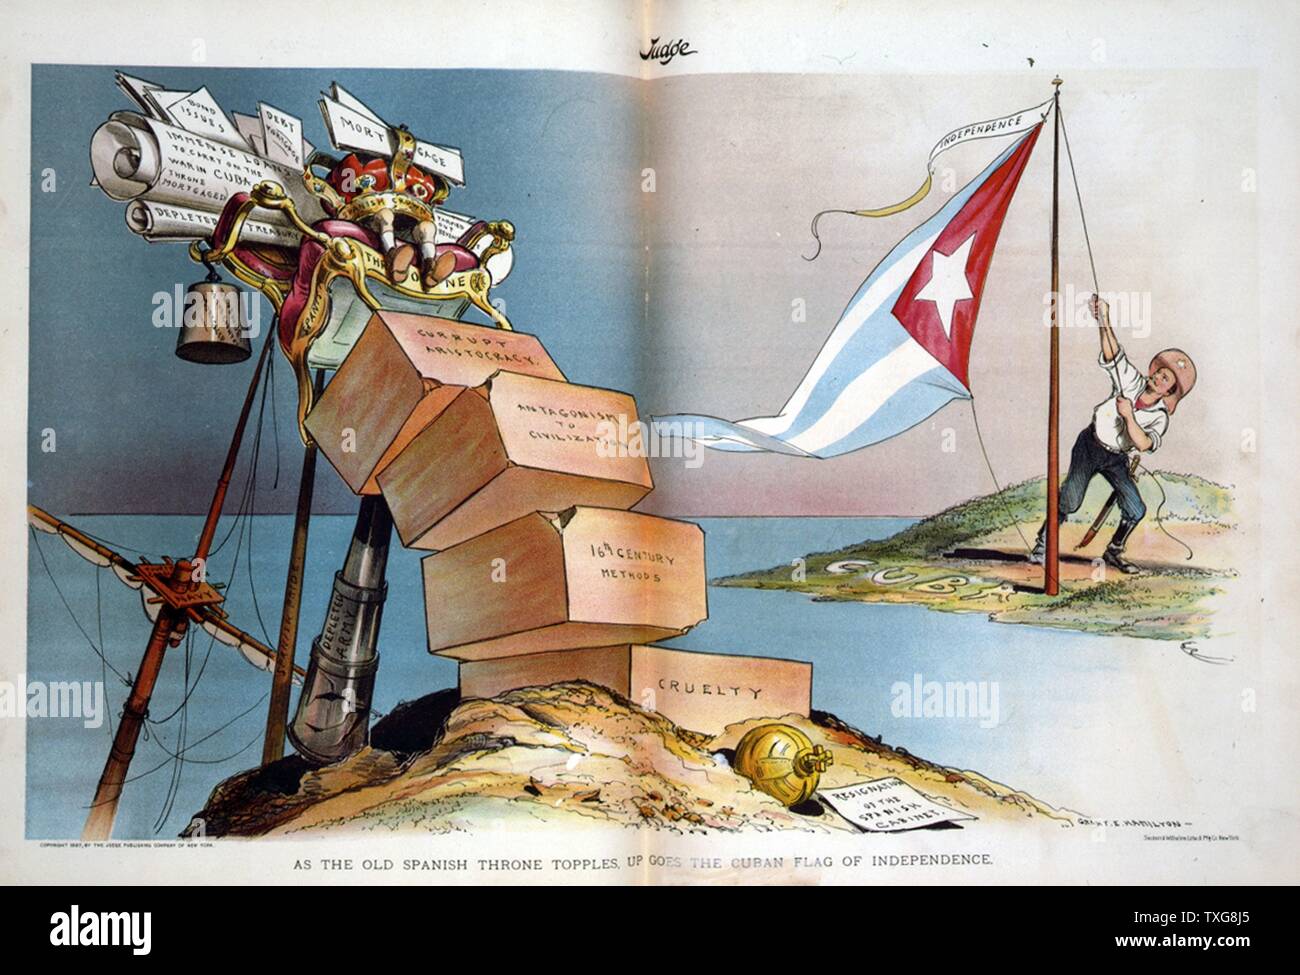 Guerre hispano-américaine 1898 : l'Espagne a perdu son empire et United States devint puissance régionale en Amérique du Sud et les Caraïbes caricature Theodore Roosevelt hissant le drapeau cubain fanion ci-dessous marqués "indépendance" Banque D'Images